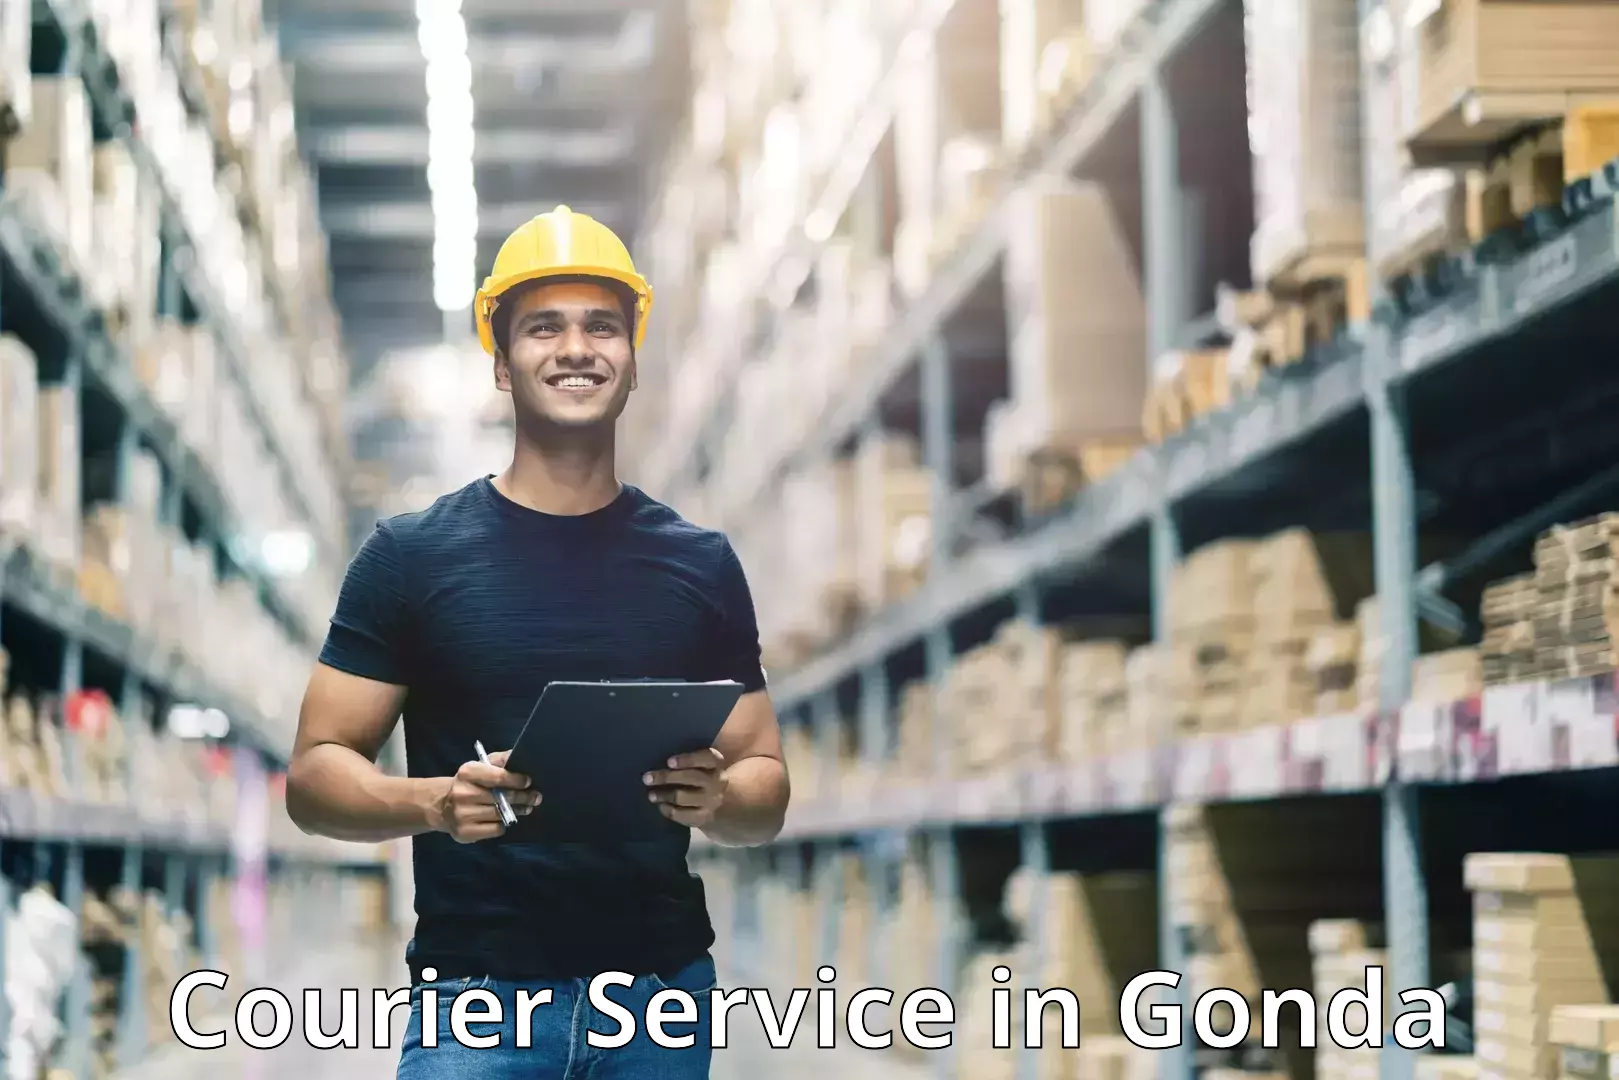 Premium courier services in Gonda